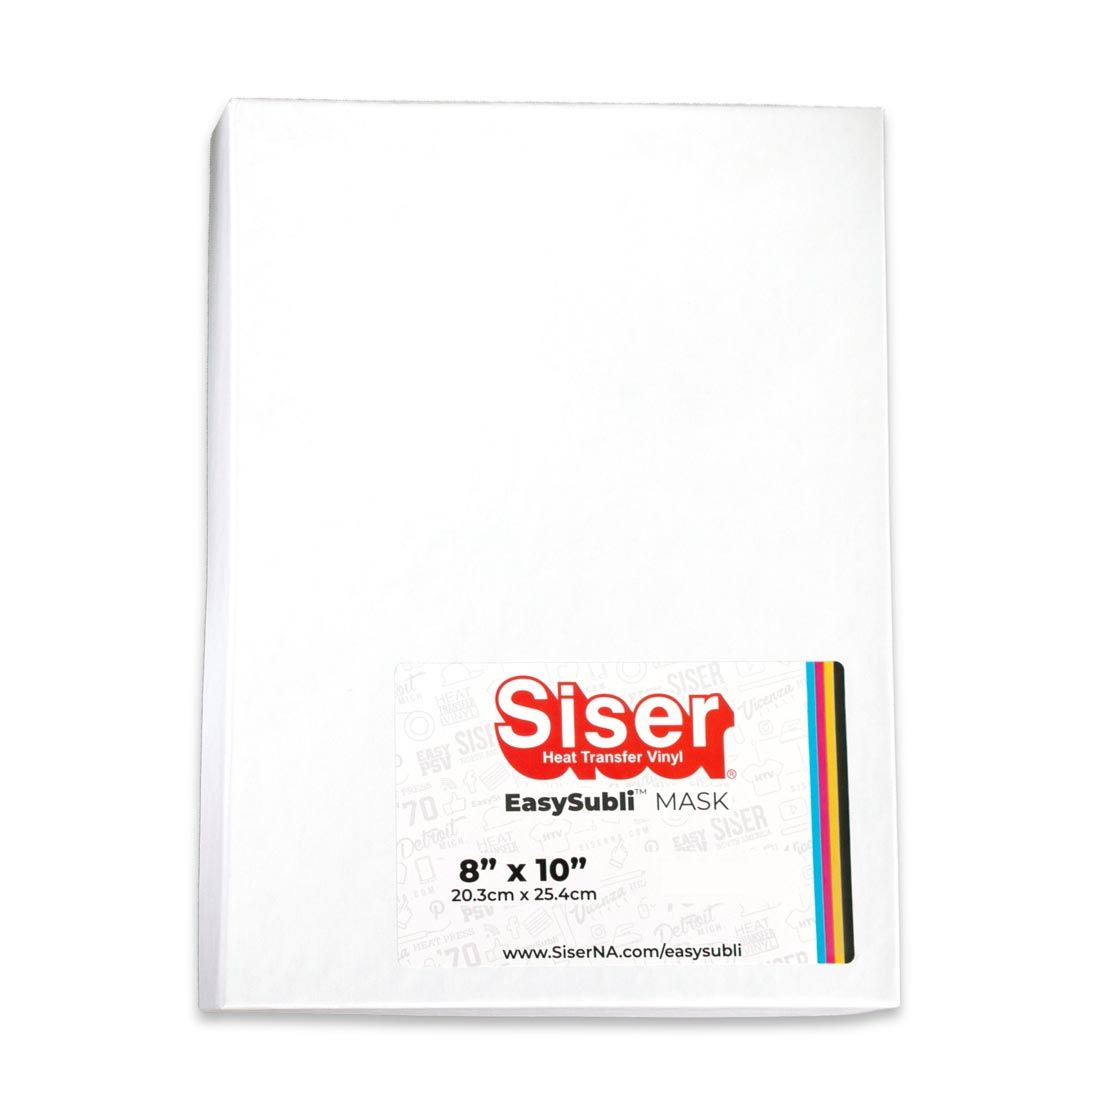 Siser EasySubli Mask Sheets - 50 sheets 8"x10"